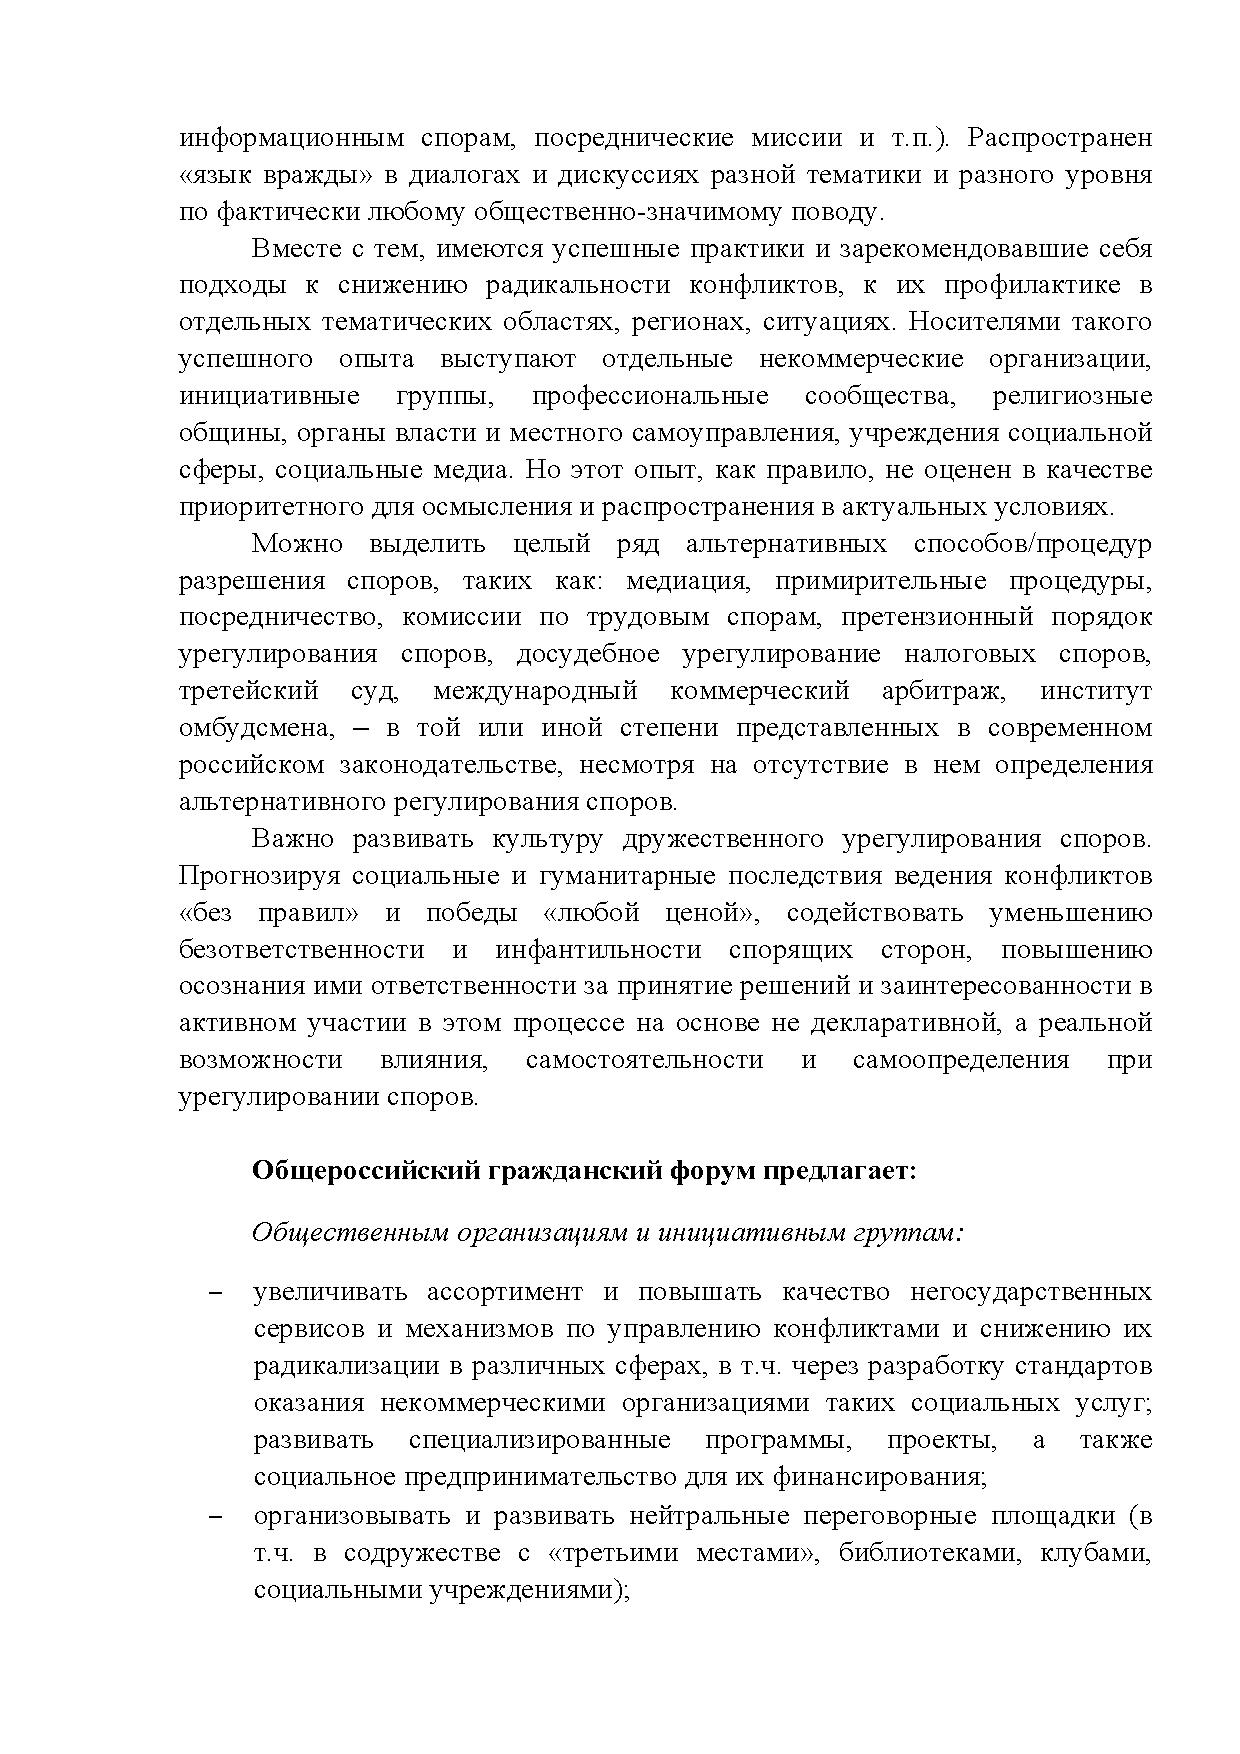  Опубликованы Предложения Общероссийского гражданского форума 2015 - фото 17